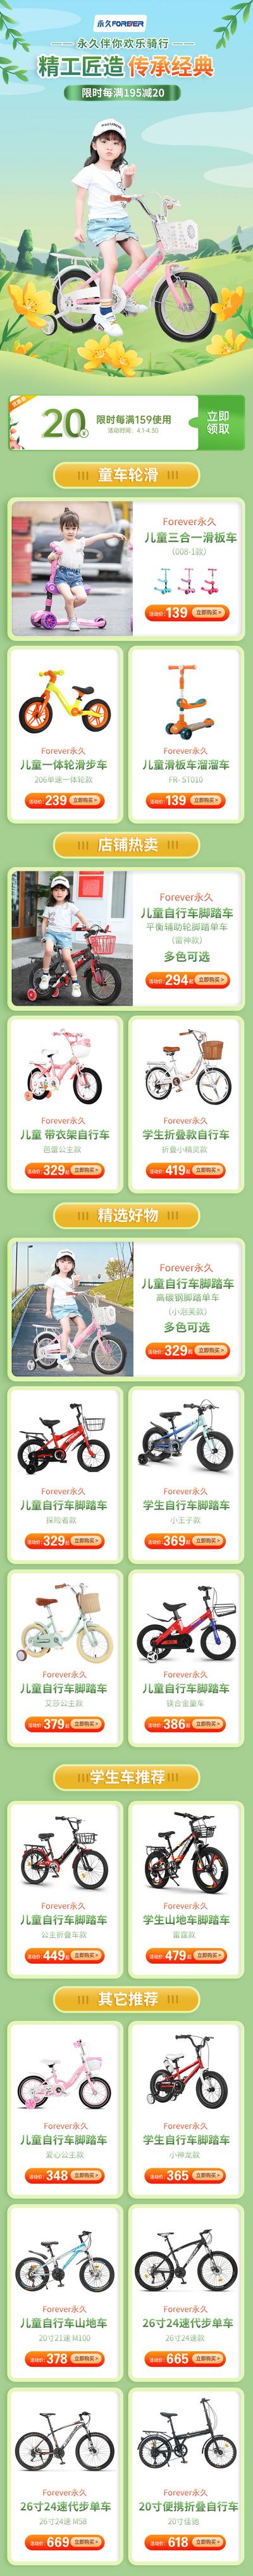 南门网 广告 海报 电商 单车 专题 自行车 儿童 活动 促销 春天